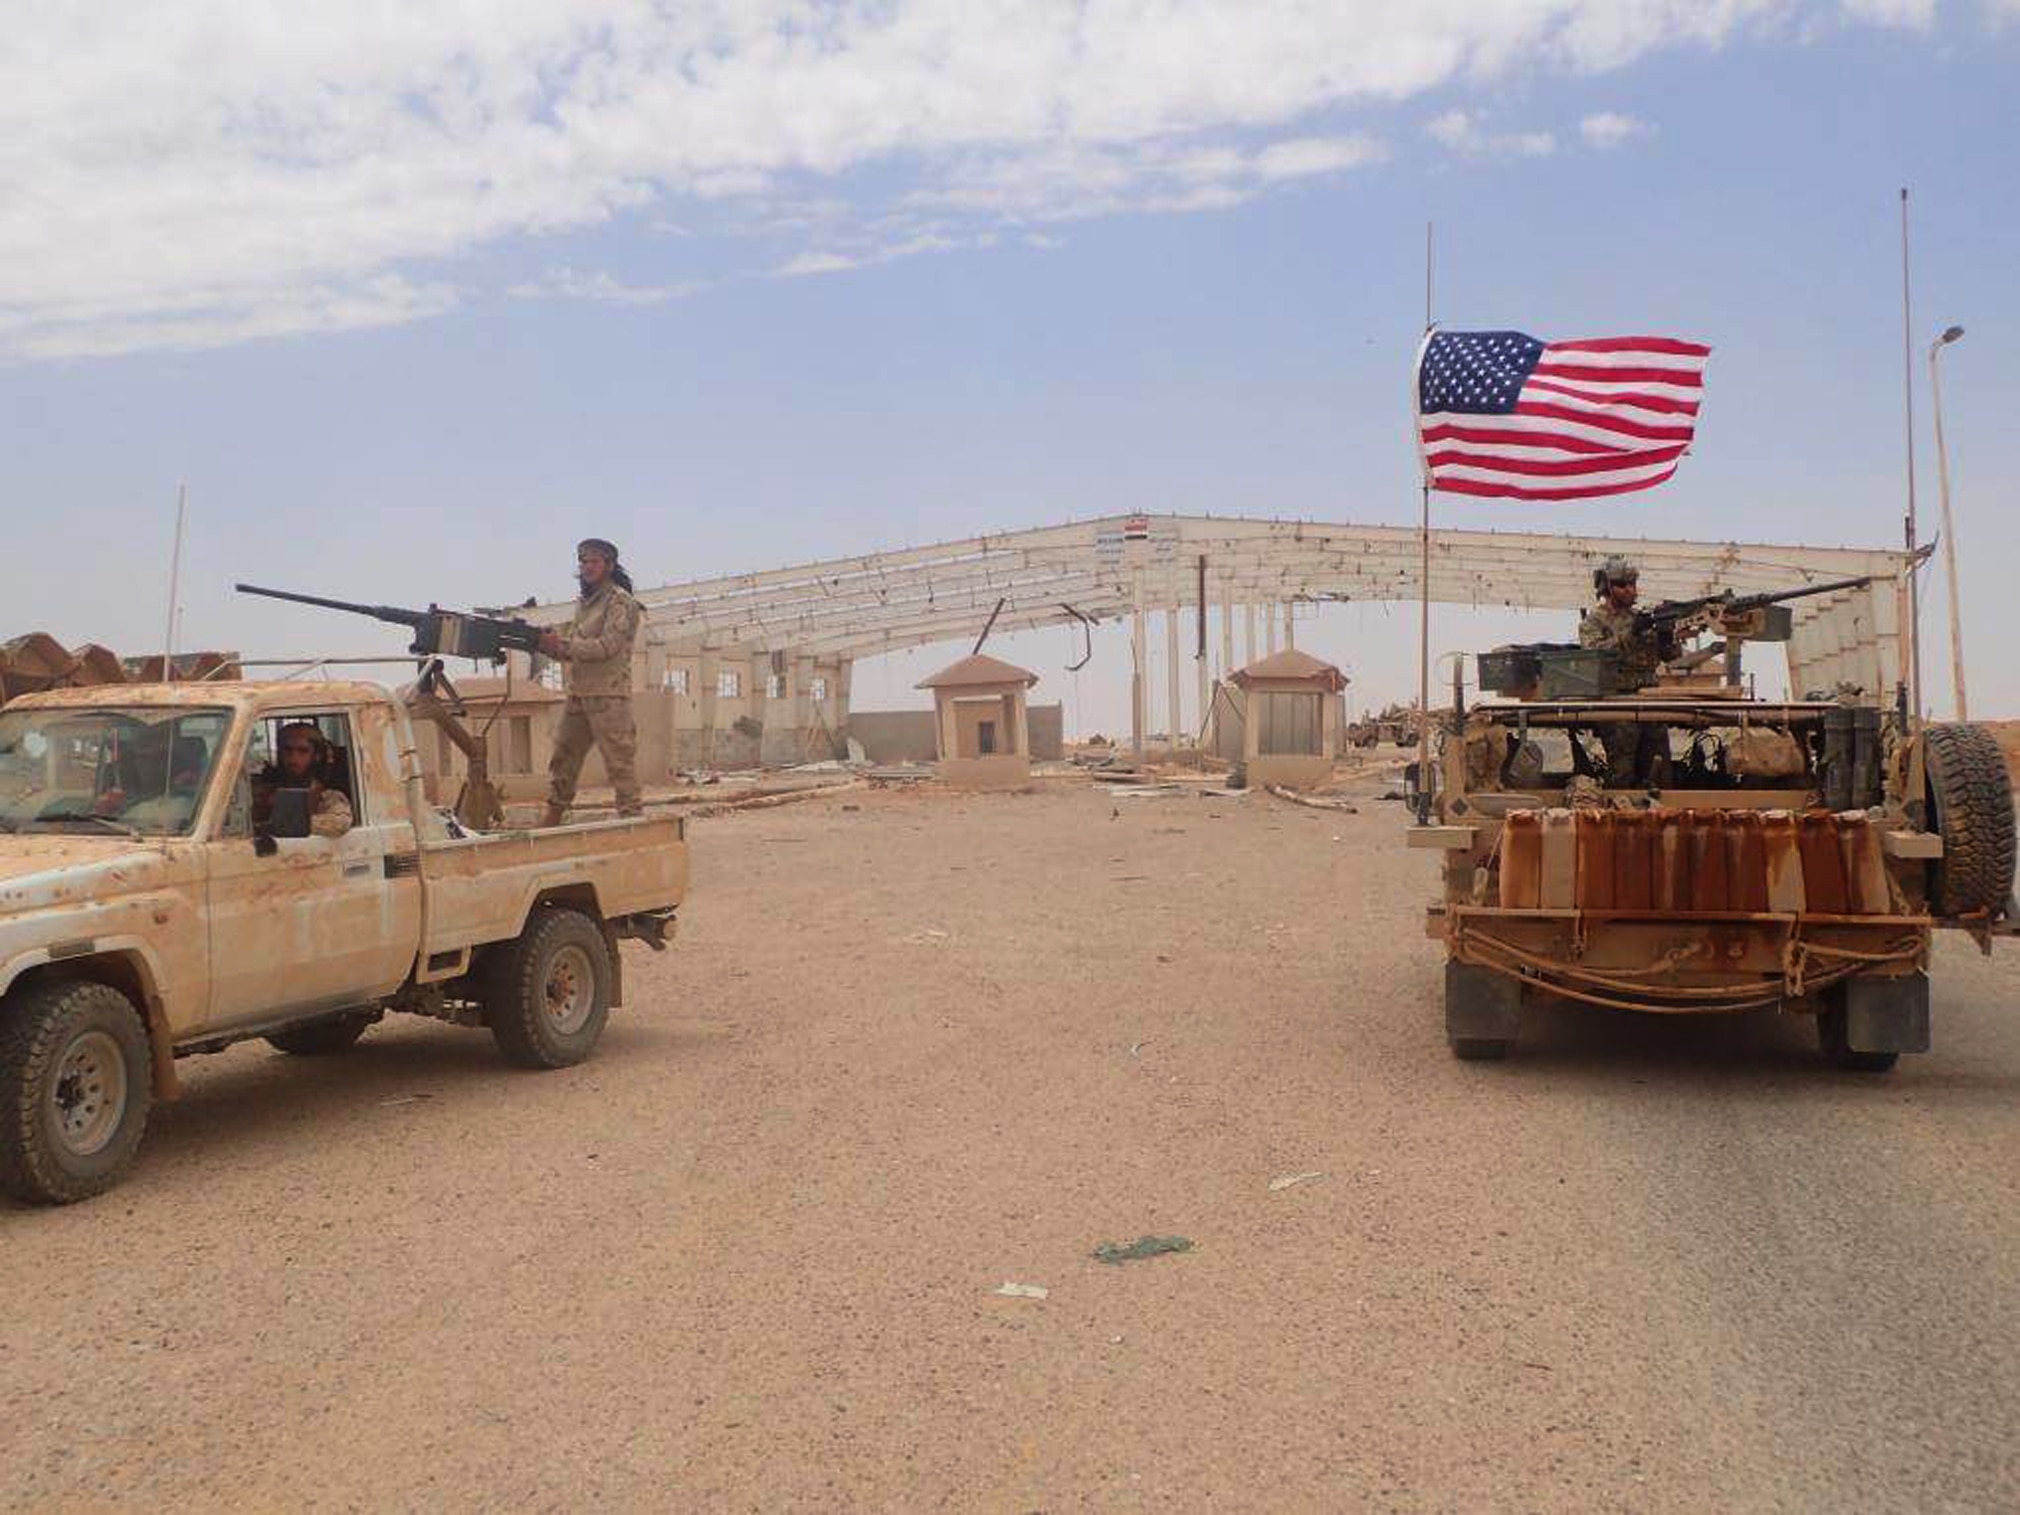 Η επίθεση με μη επανδρωμένο αεροσκάφος στη βάση των ΗΠΑ στη Συρία εντείνει τις περιφερειακές αναταραχές